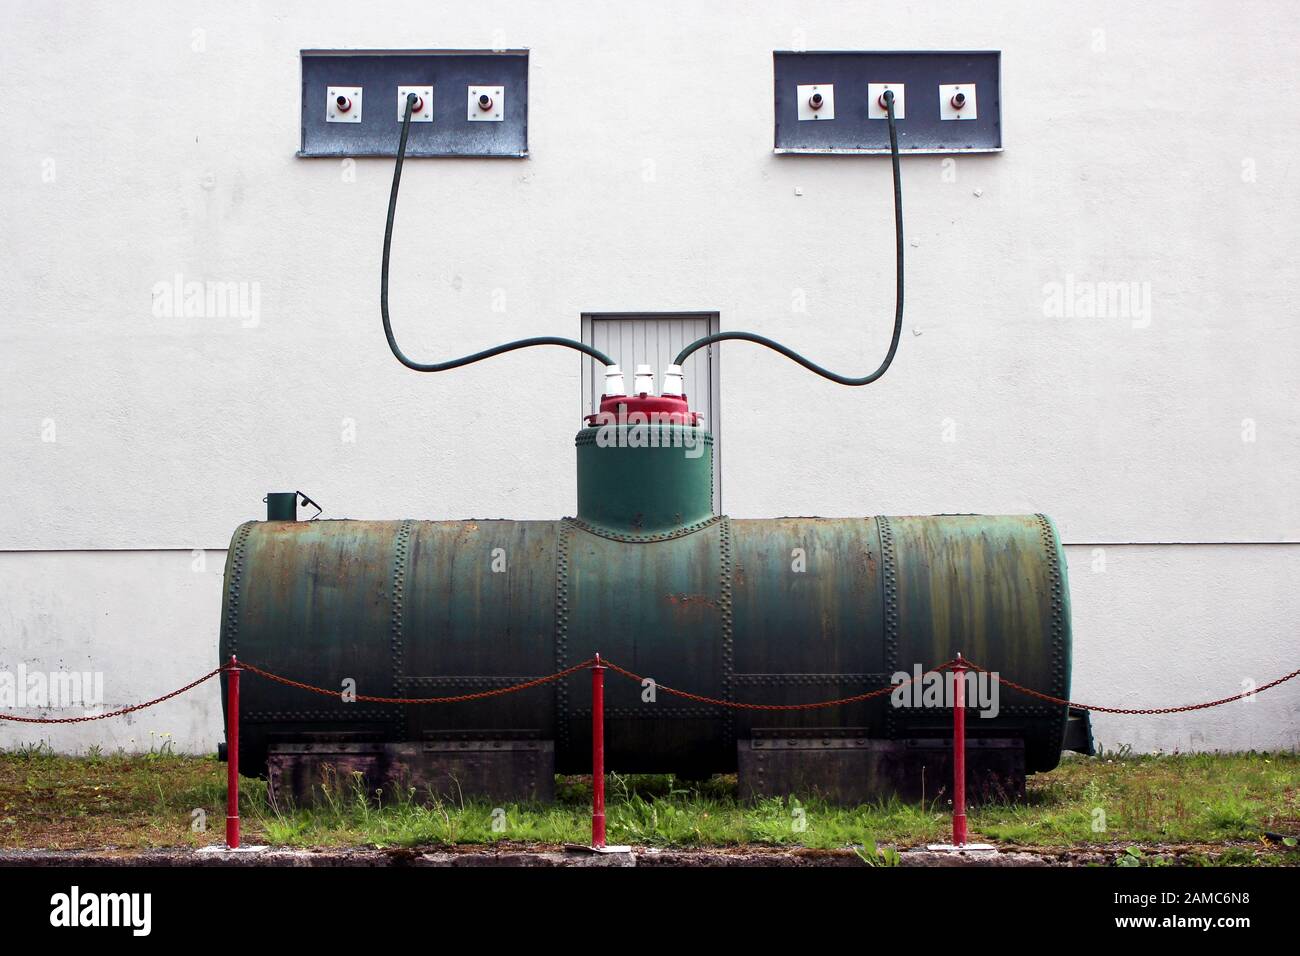 Sistema de suministro de energía disfuncional - una obra de arte de Alvar Gullichsen en el Museo Bonk en Uusikaupunki, Finlandia Foto de stock